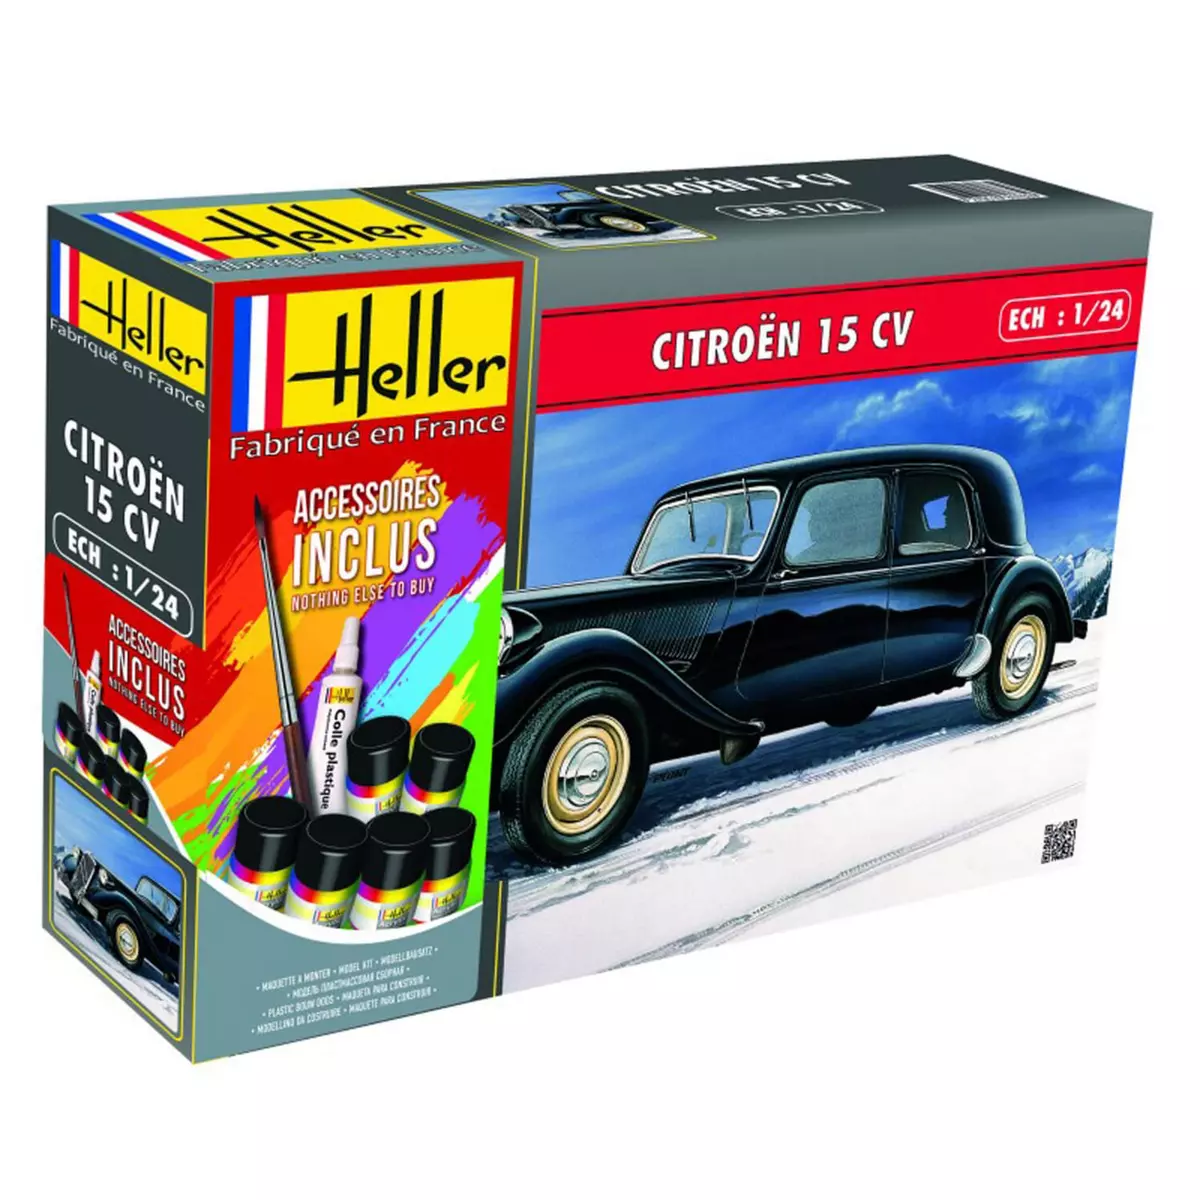 Heller Maquette voiture : Kit : Citroën 15 CV